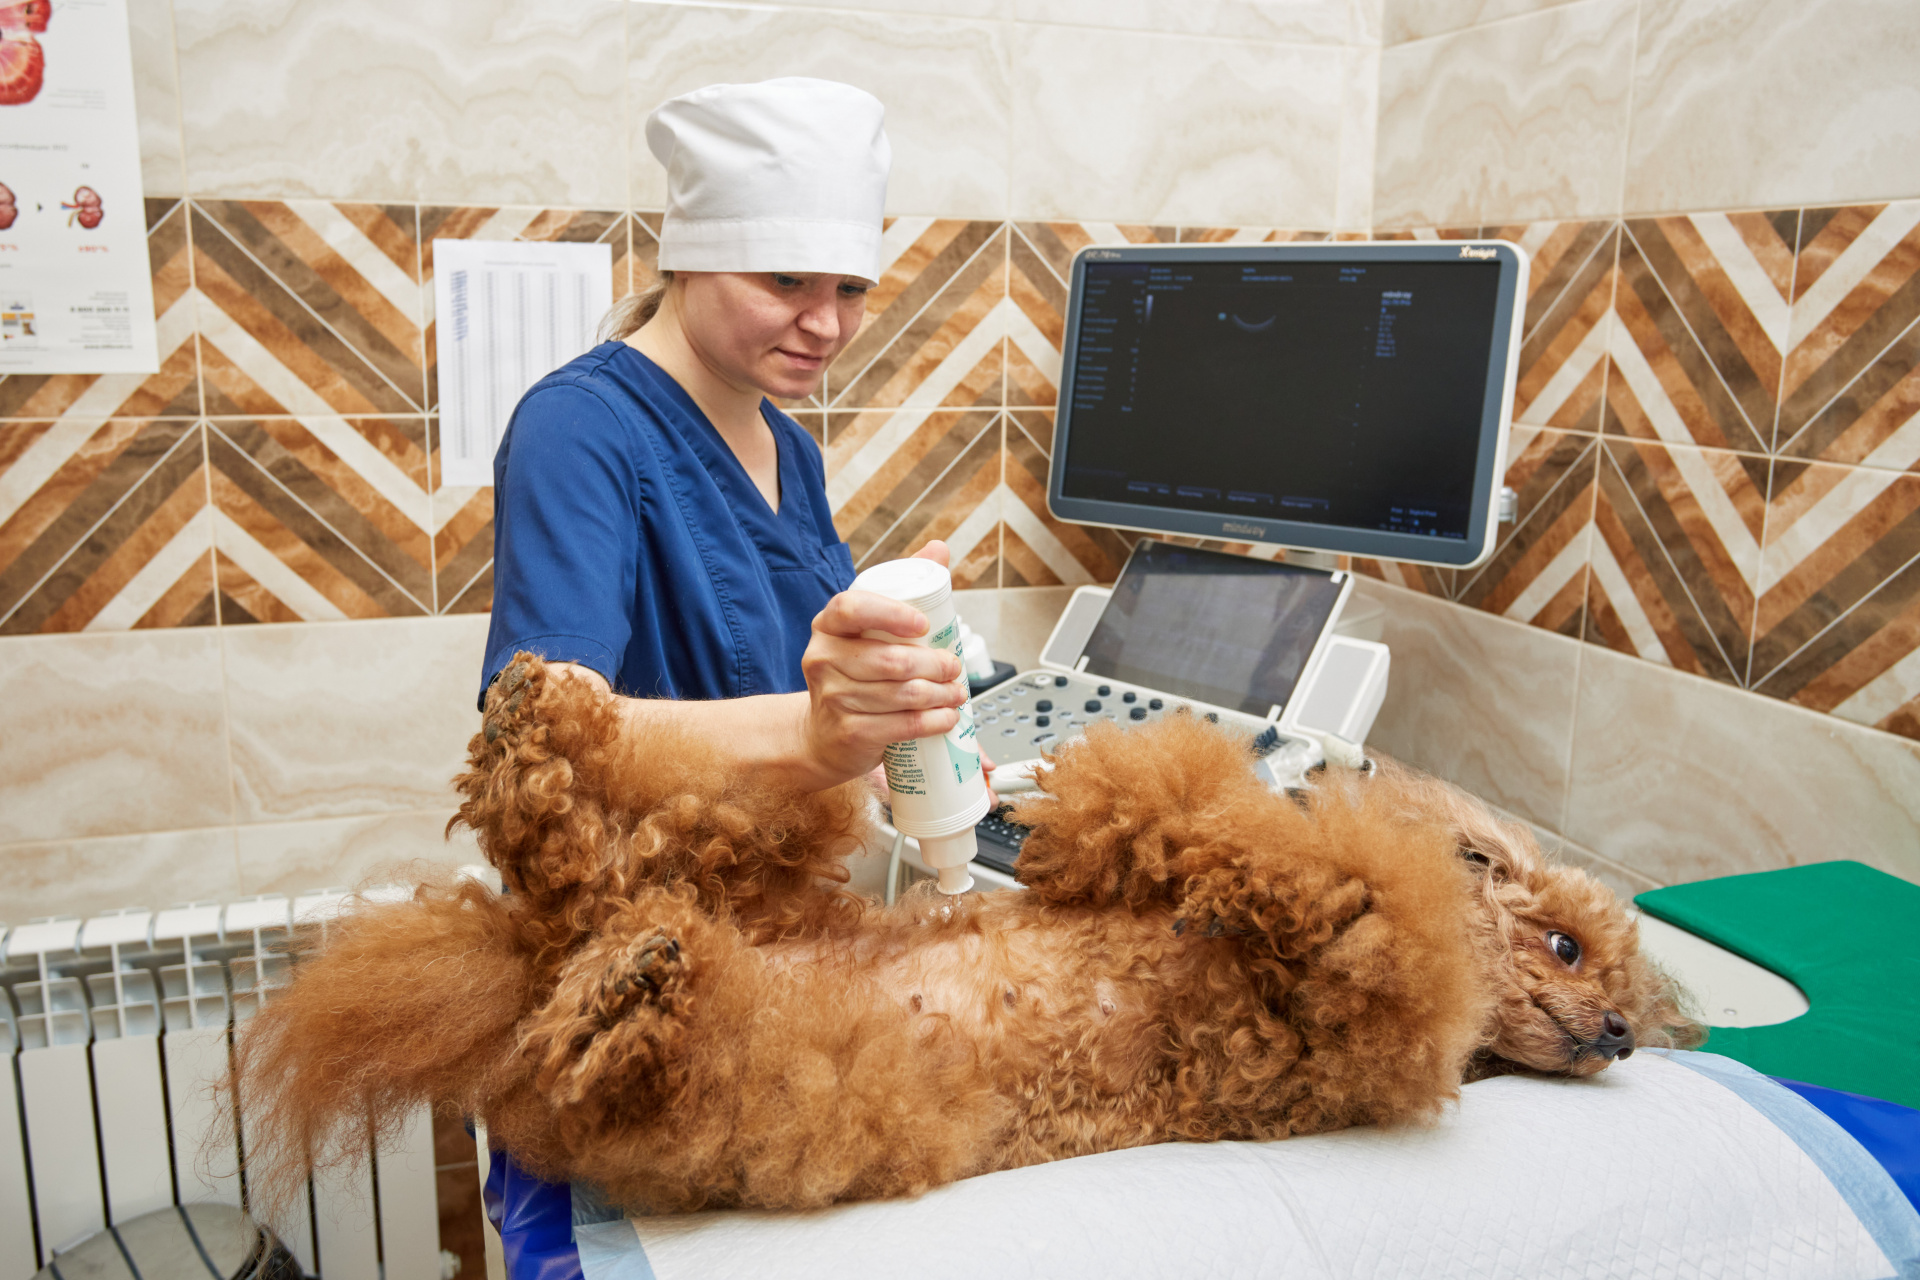 Порядка 700 обращений в поликлинику "Добровет" для получения ветеринарной помощи зарегистрировано в сентябре